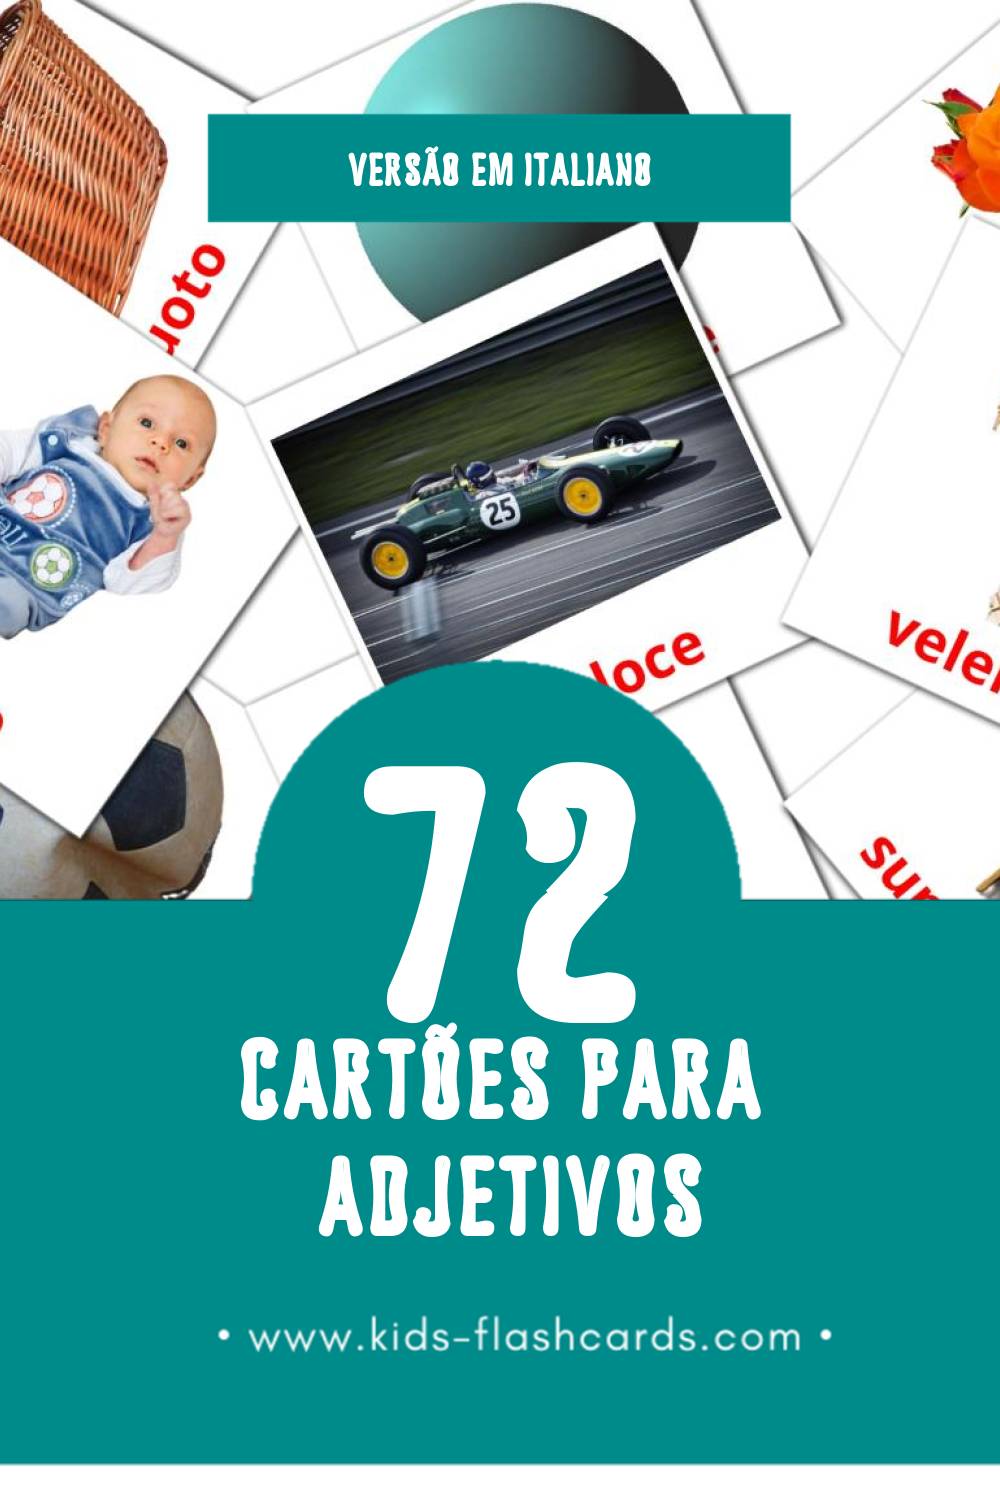 Flashcards de Aggettivi Visuais para Toddlers (72 cartões em Italiano)